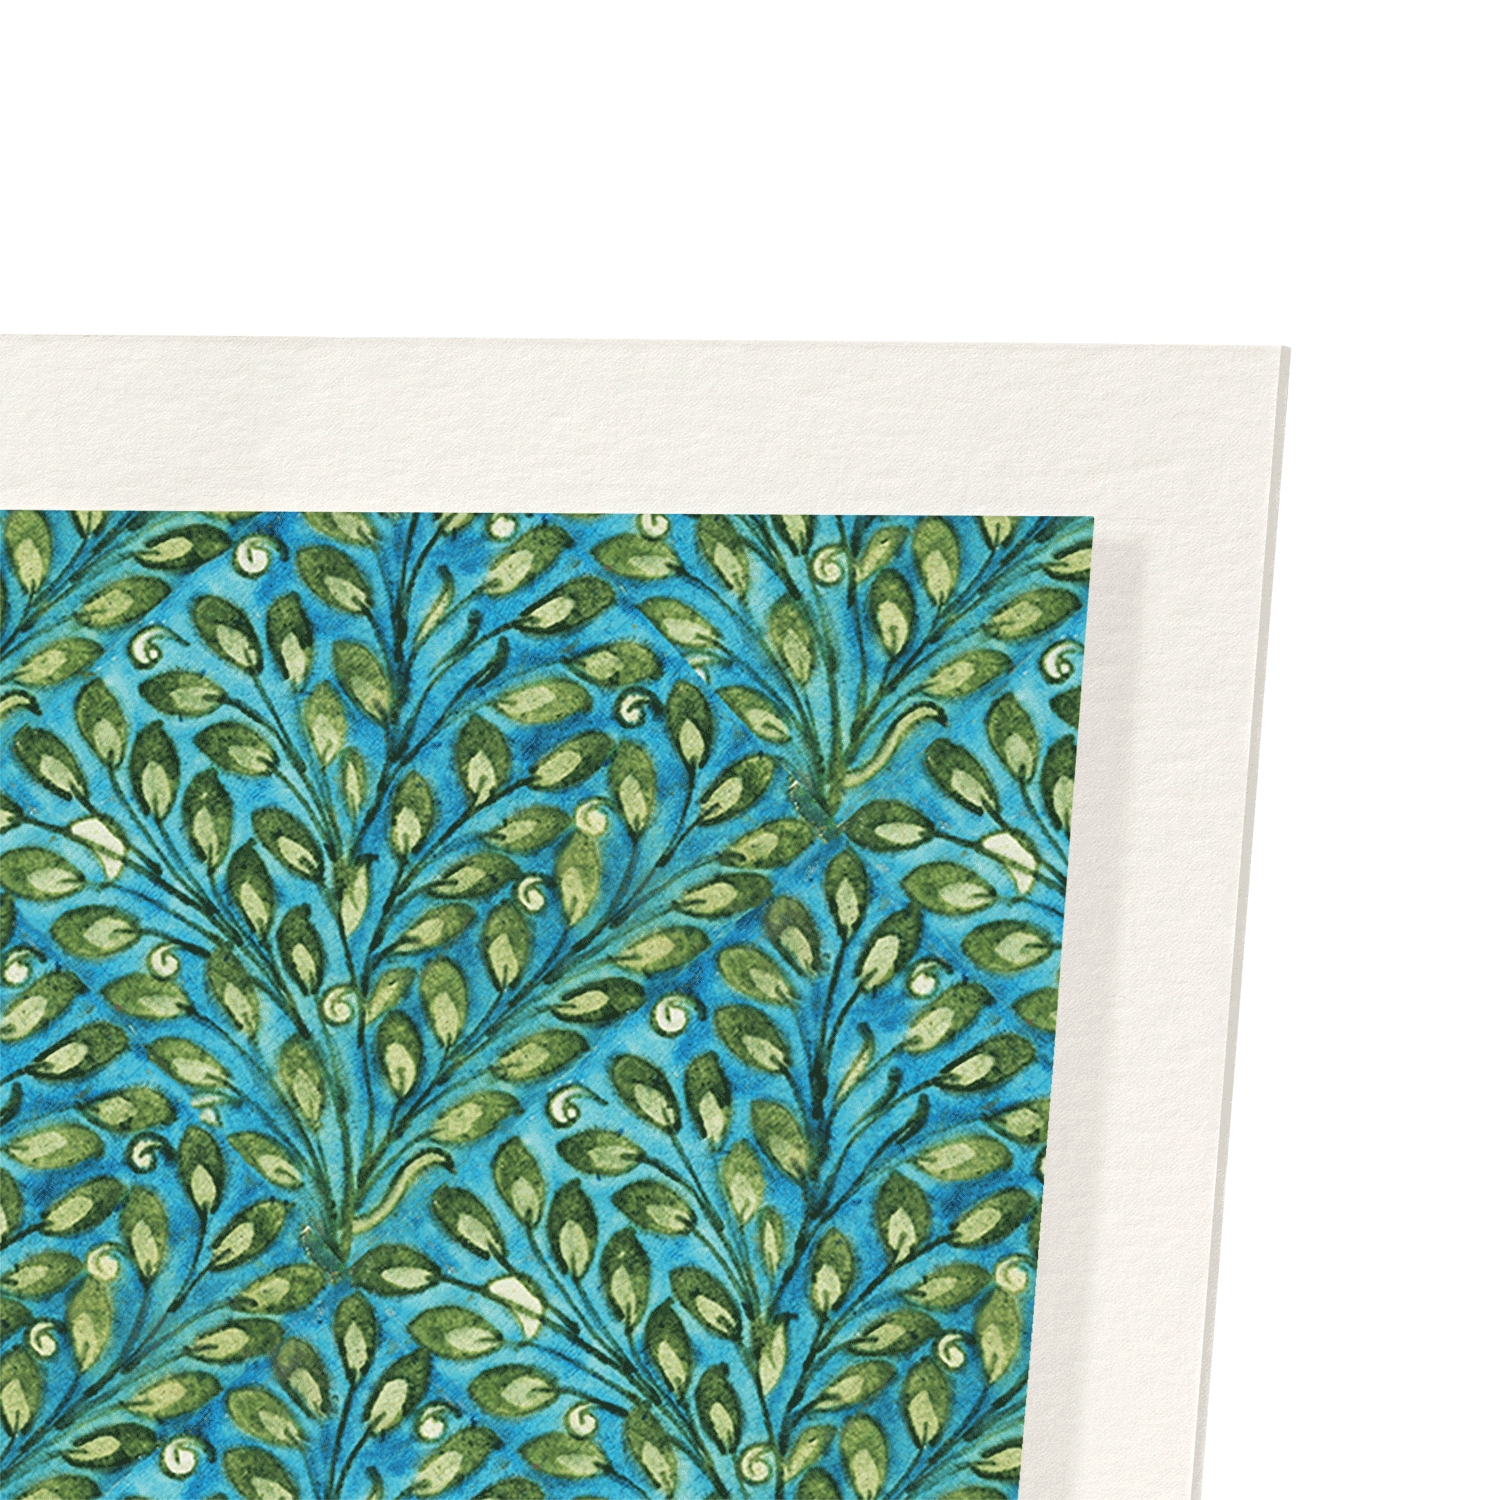 PLANT PATTERN (1885-1890): Pattern Art Print